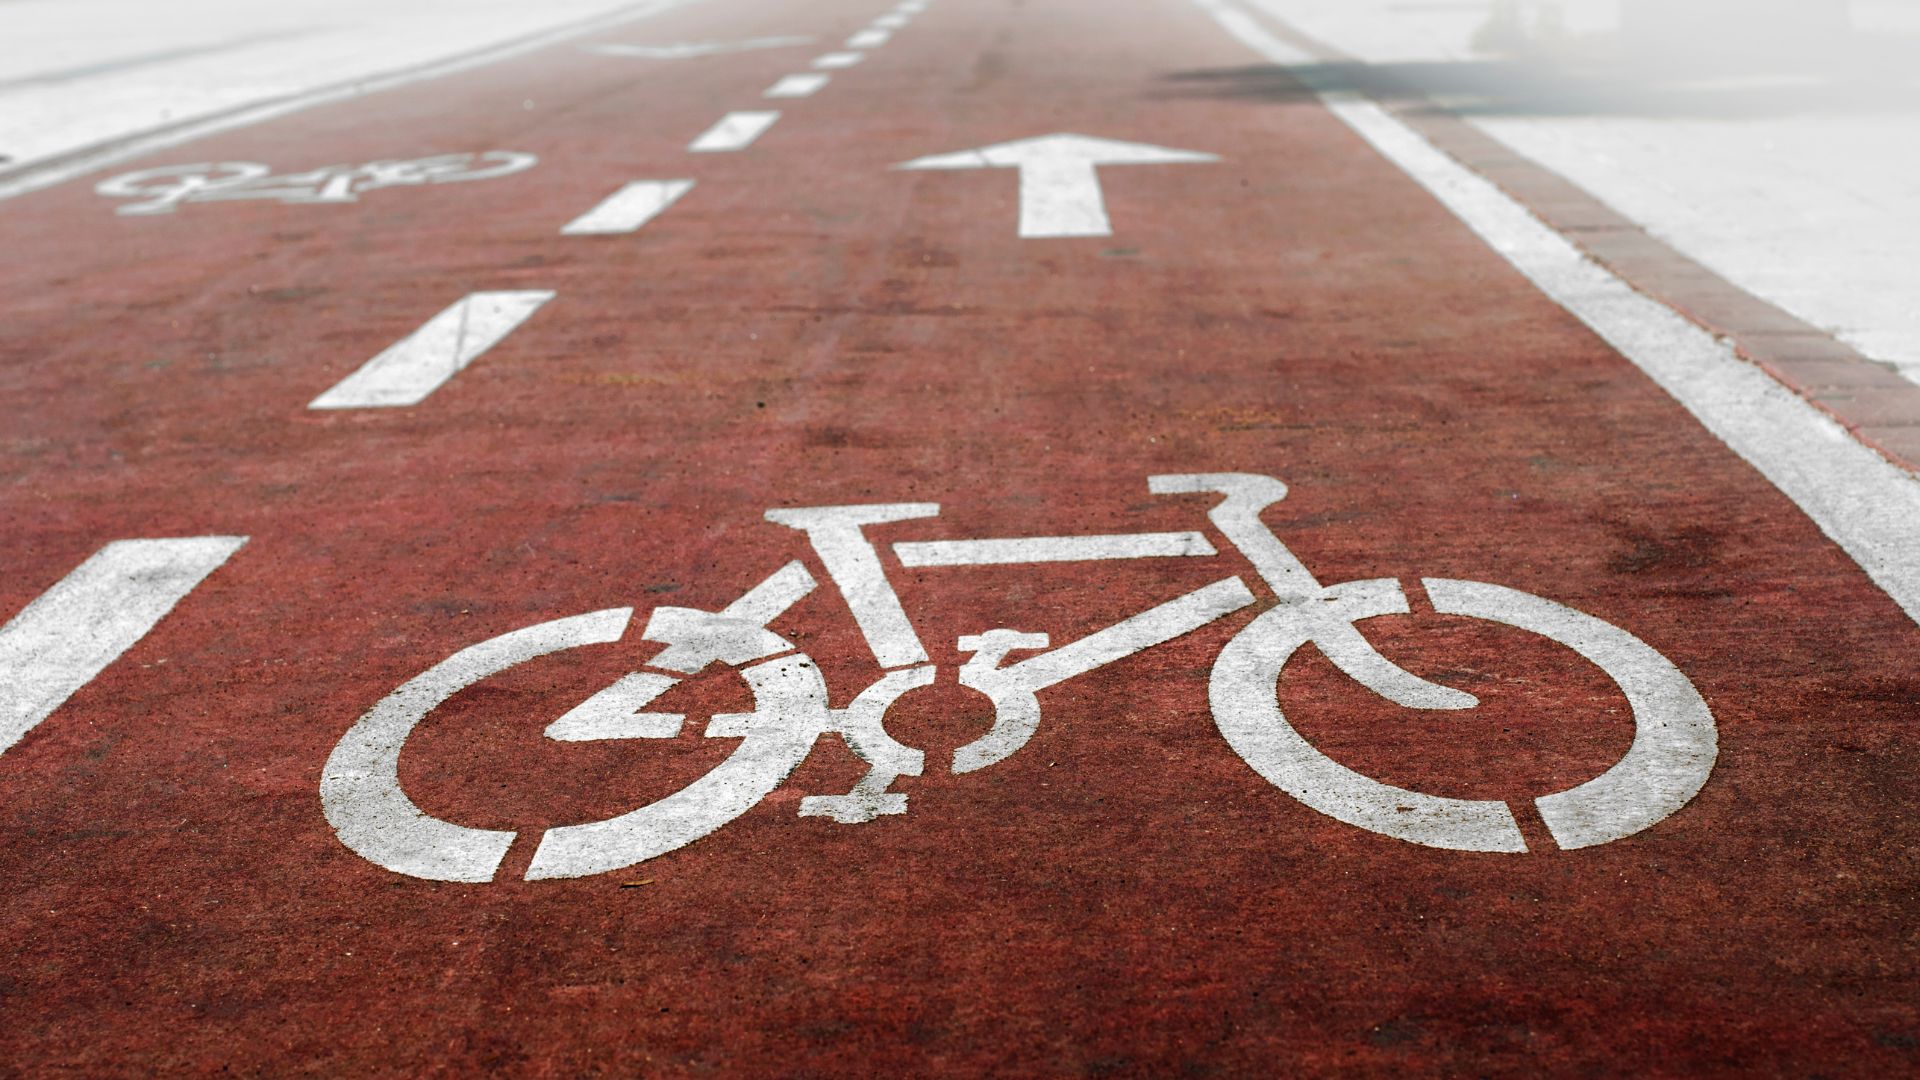 Ciclismo: O que é, como surgiu e quais os principais benefícios